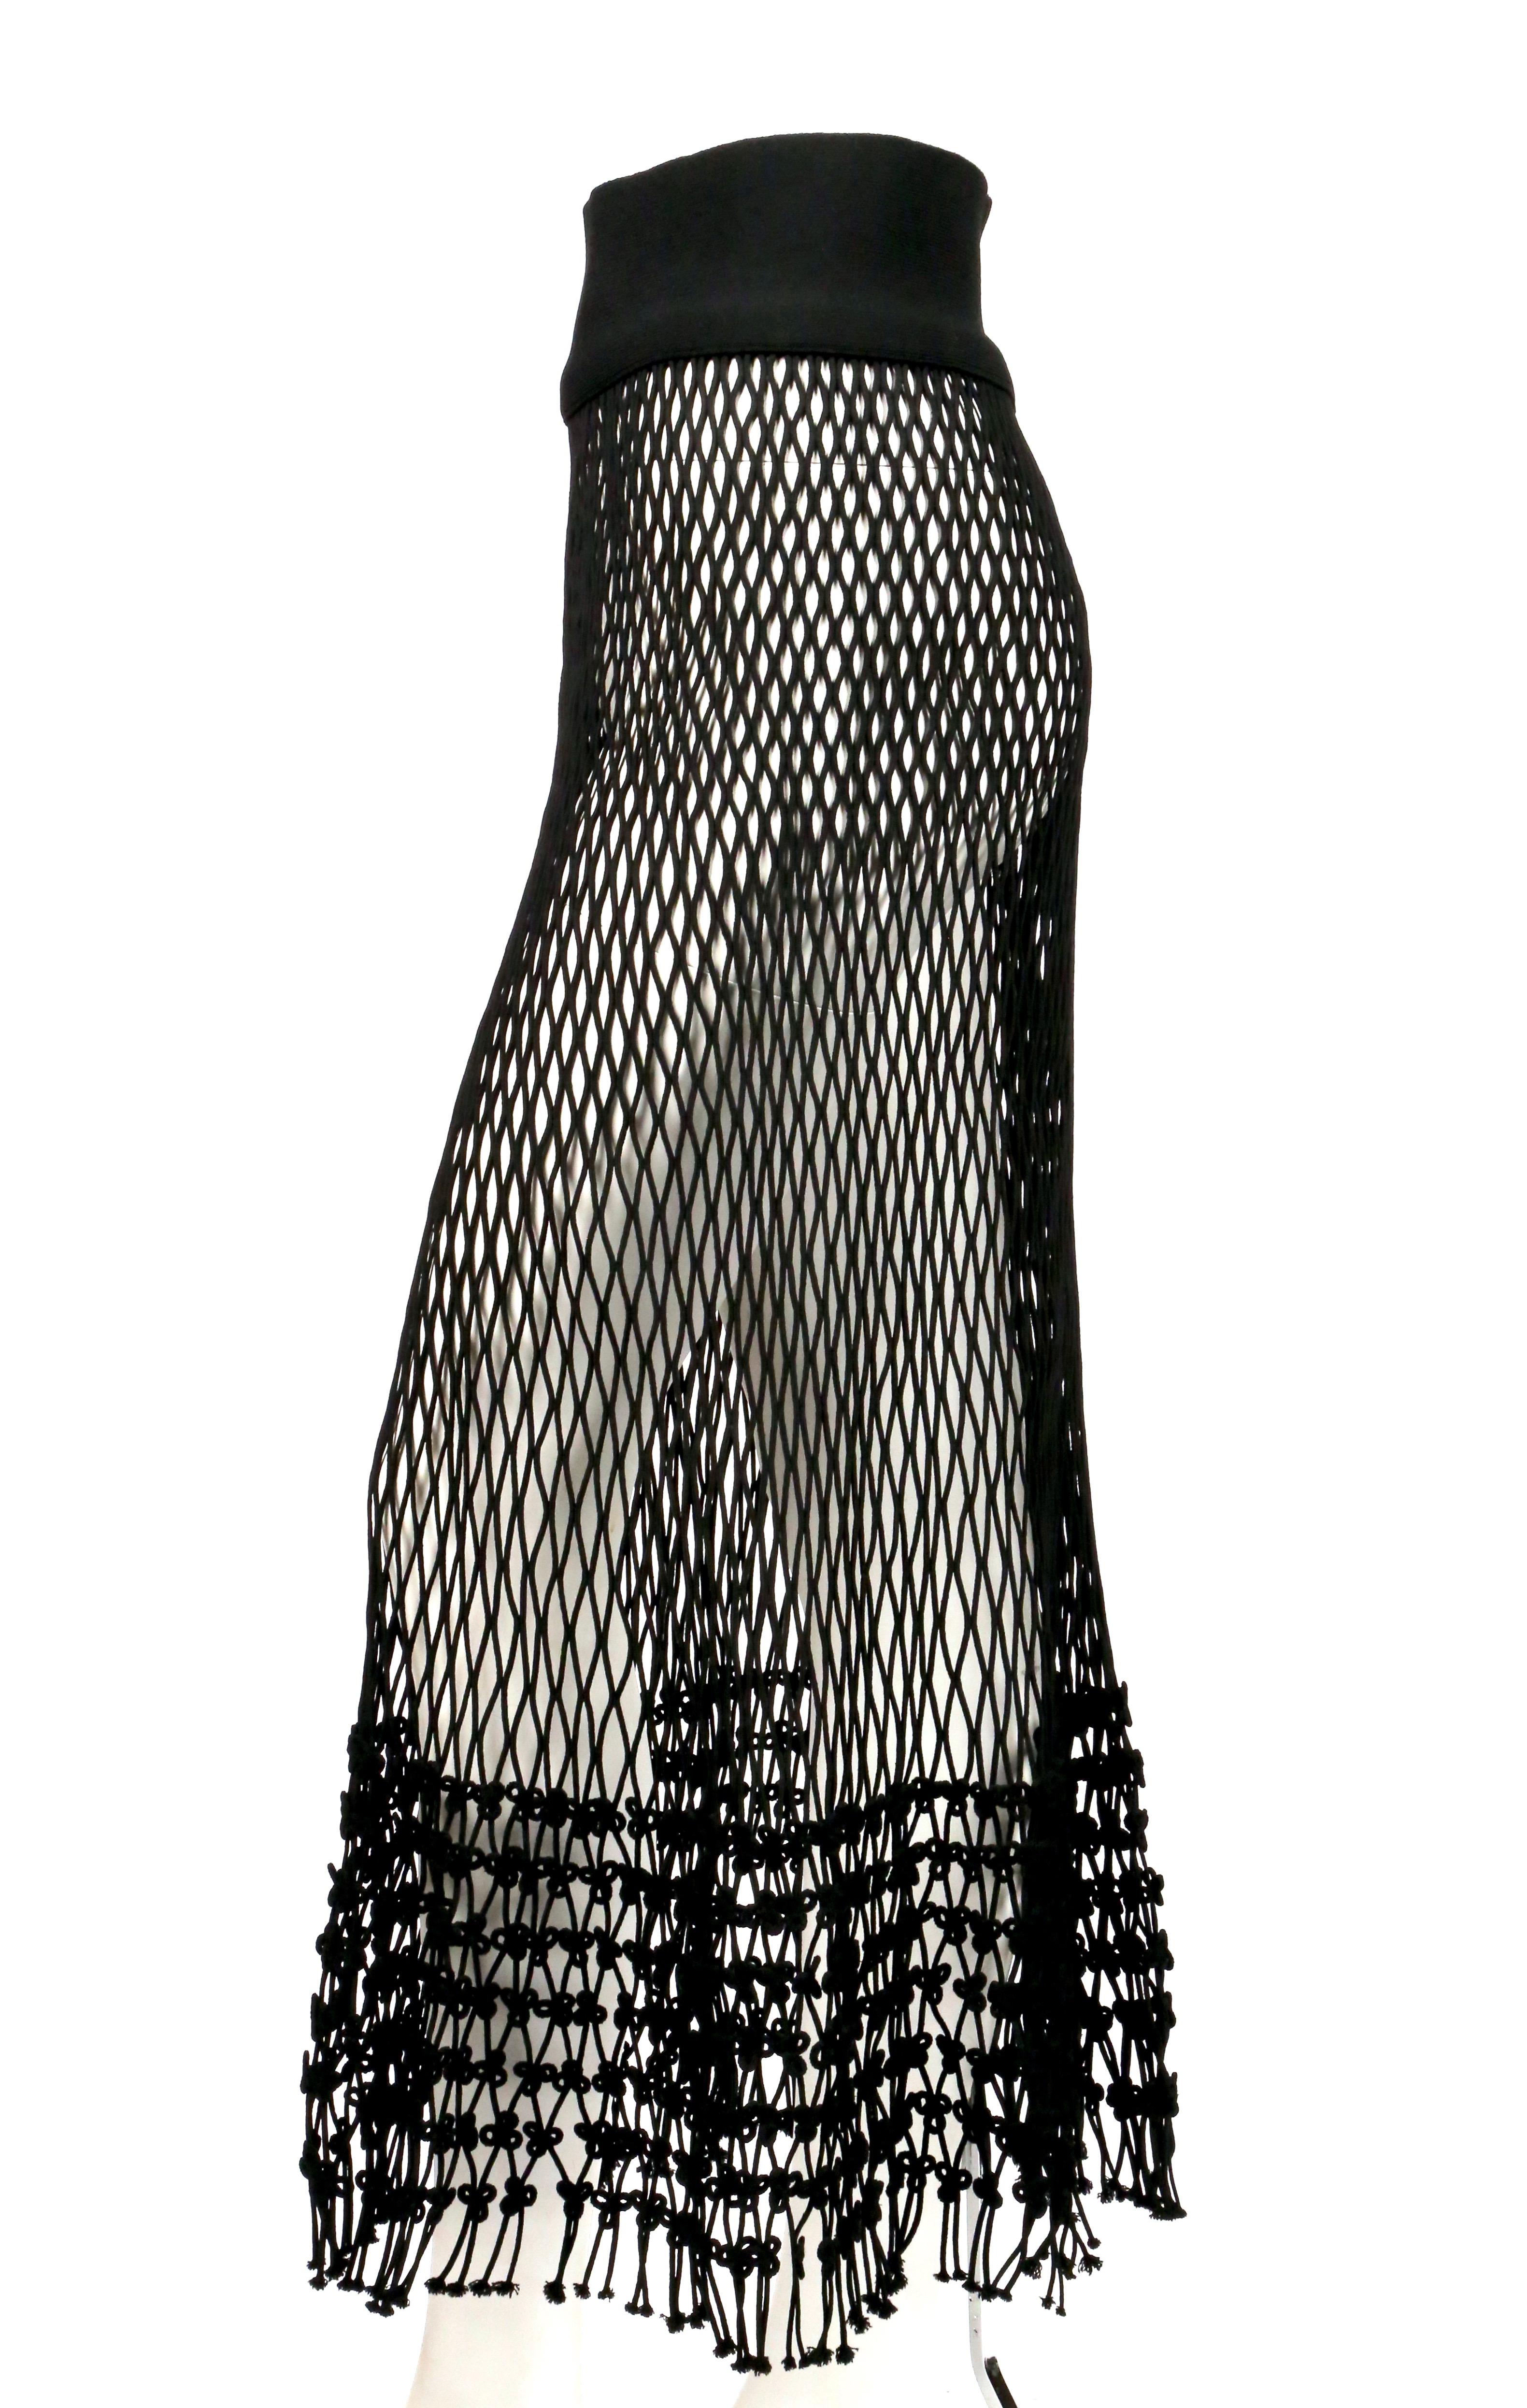 Women's or Men's 2014 CELINE by PHOEBE PHILO black net runway skirt - new